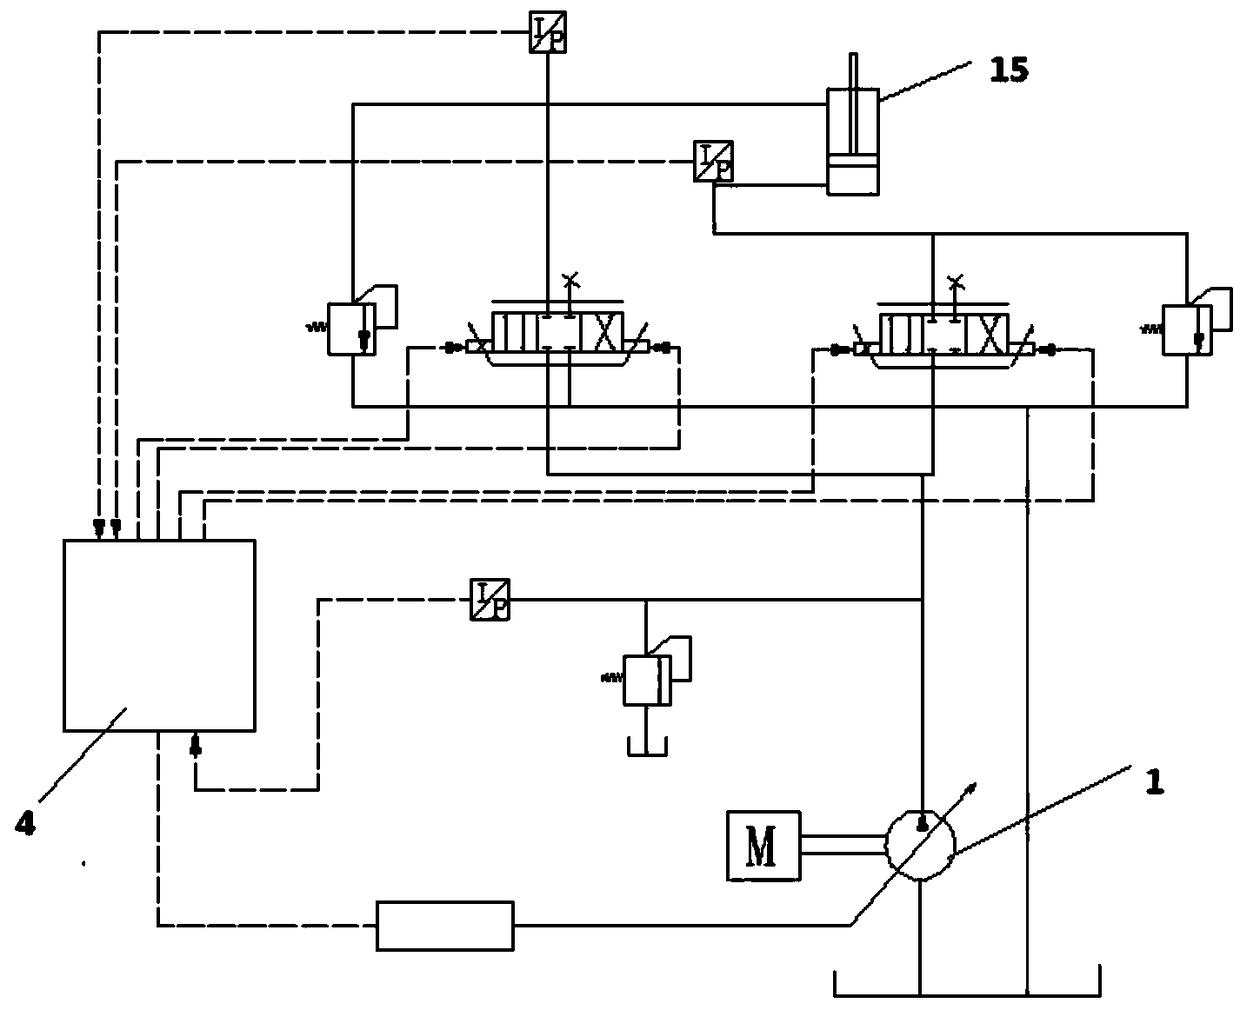 Multi-path hydraulic system of hydraulic excavator